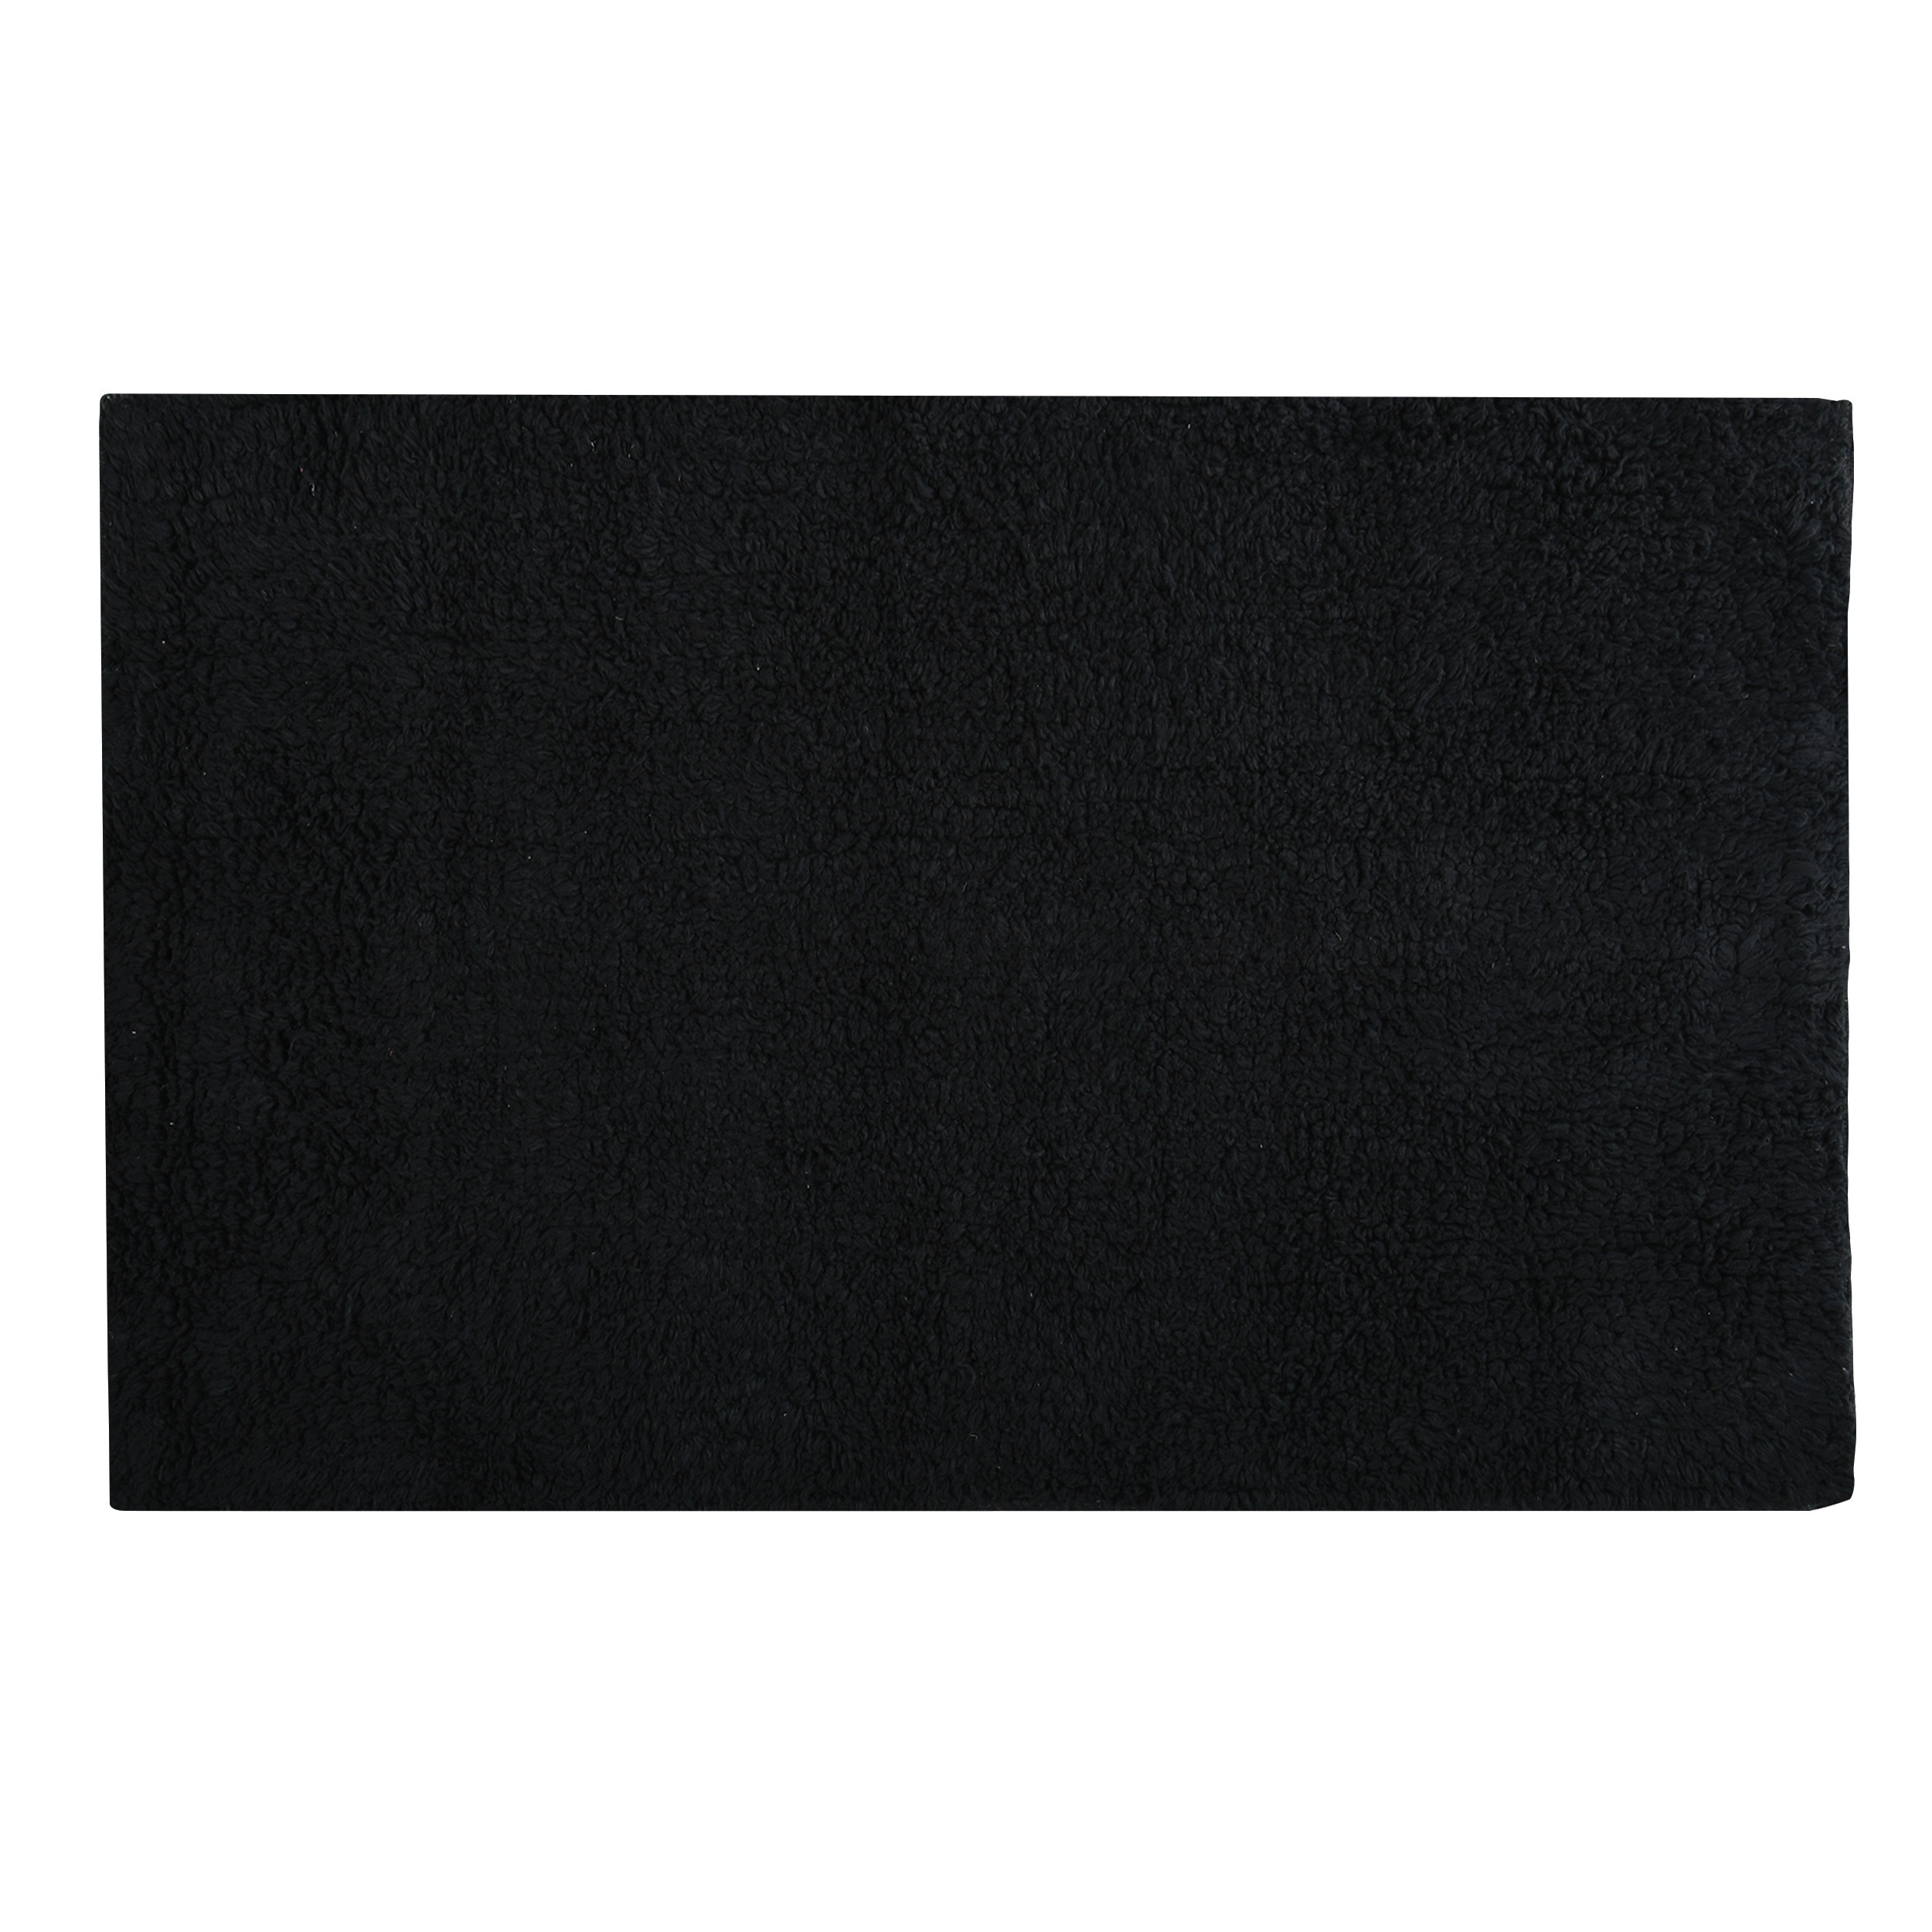 Badkamerkleedje-badmat tapijtje voor op de vloer zwart 40 x 60 cm